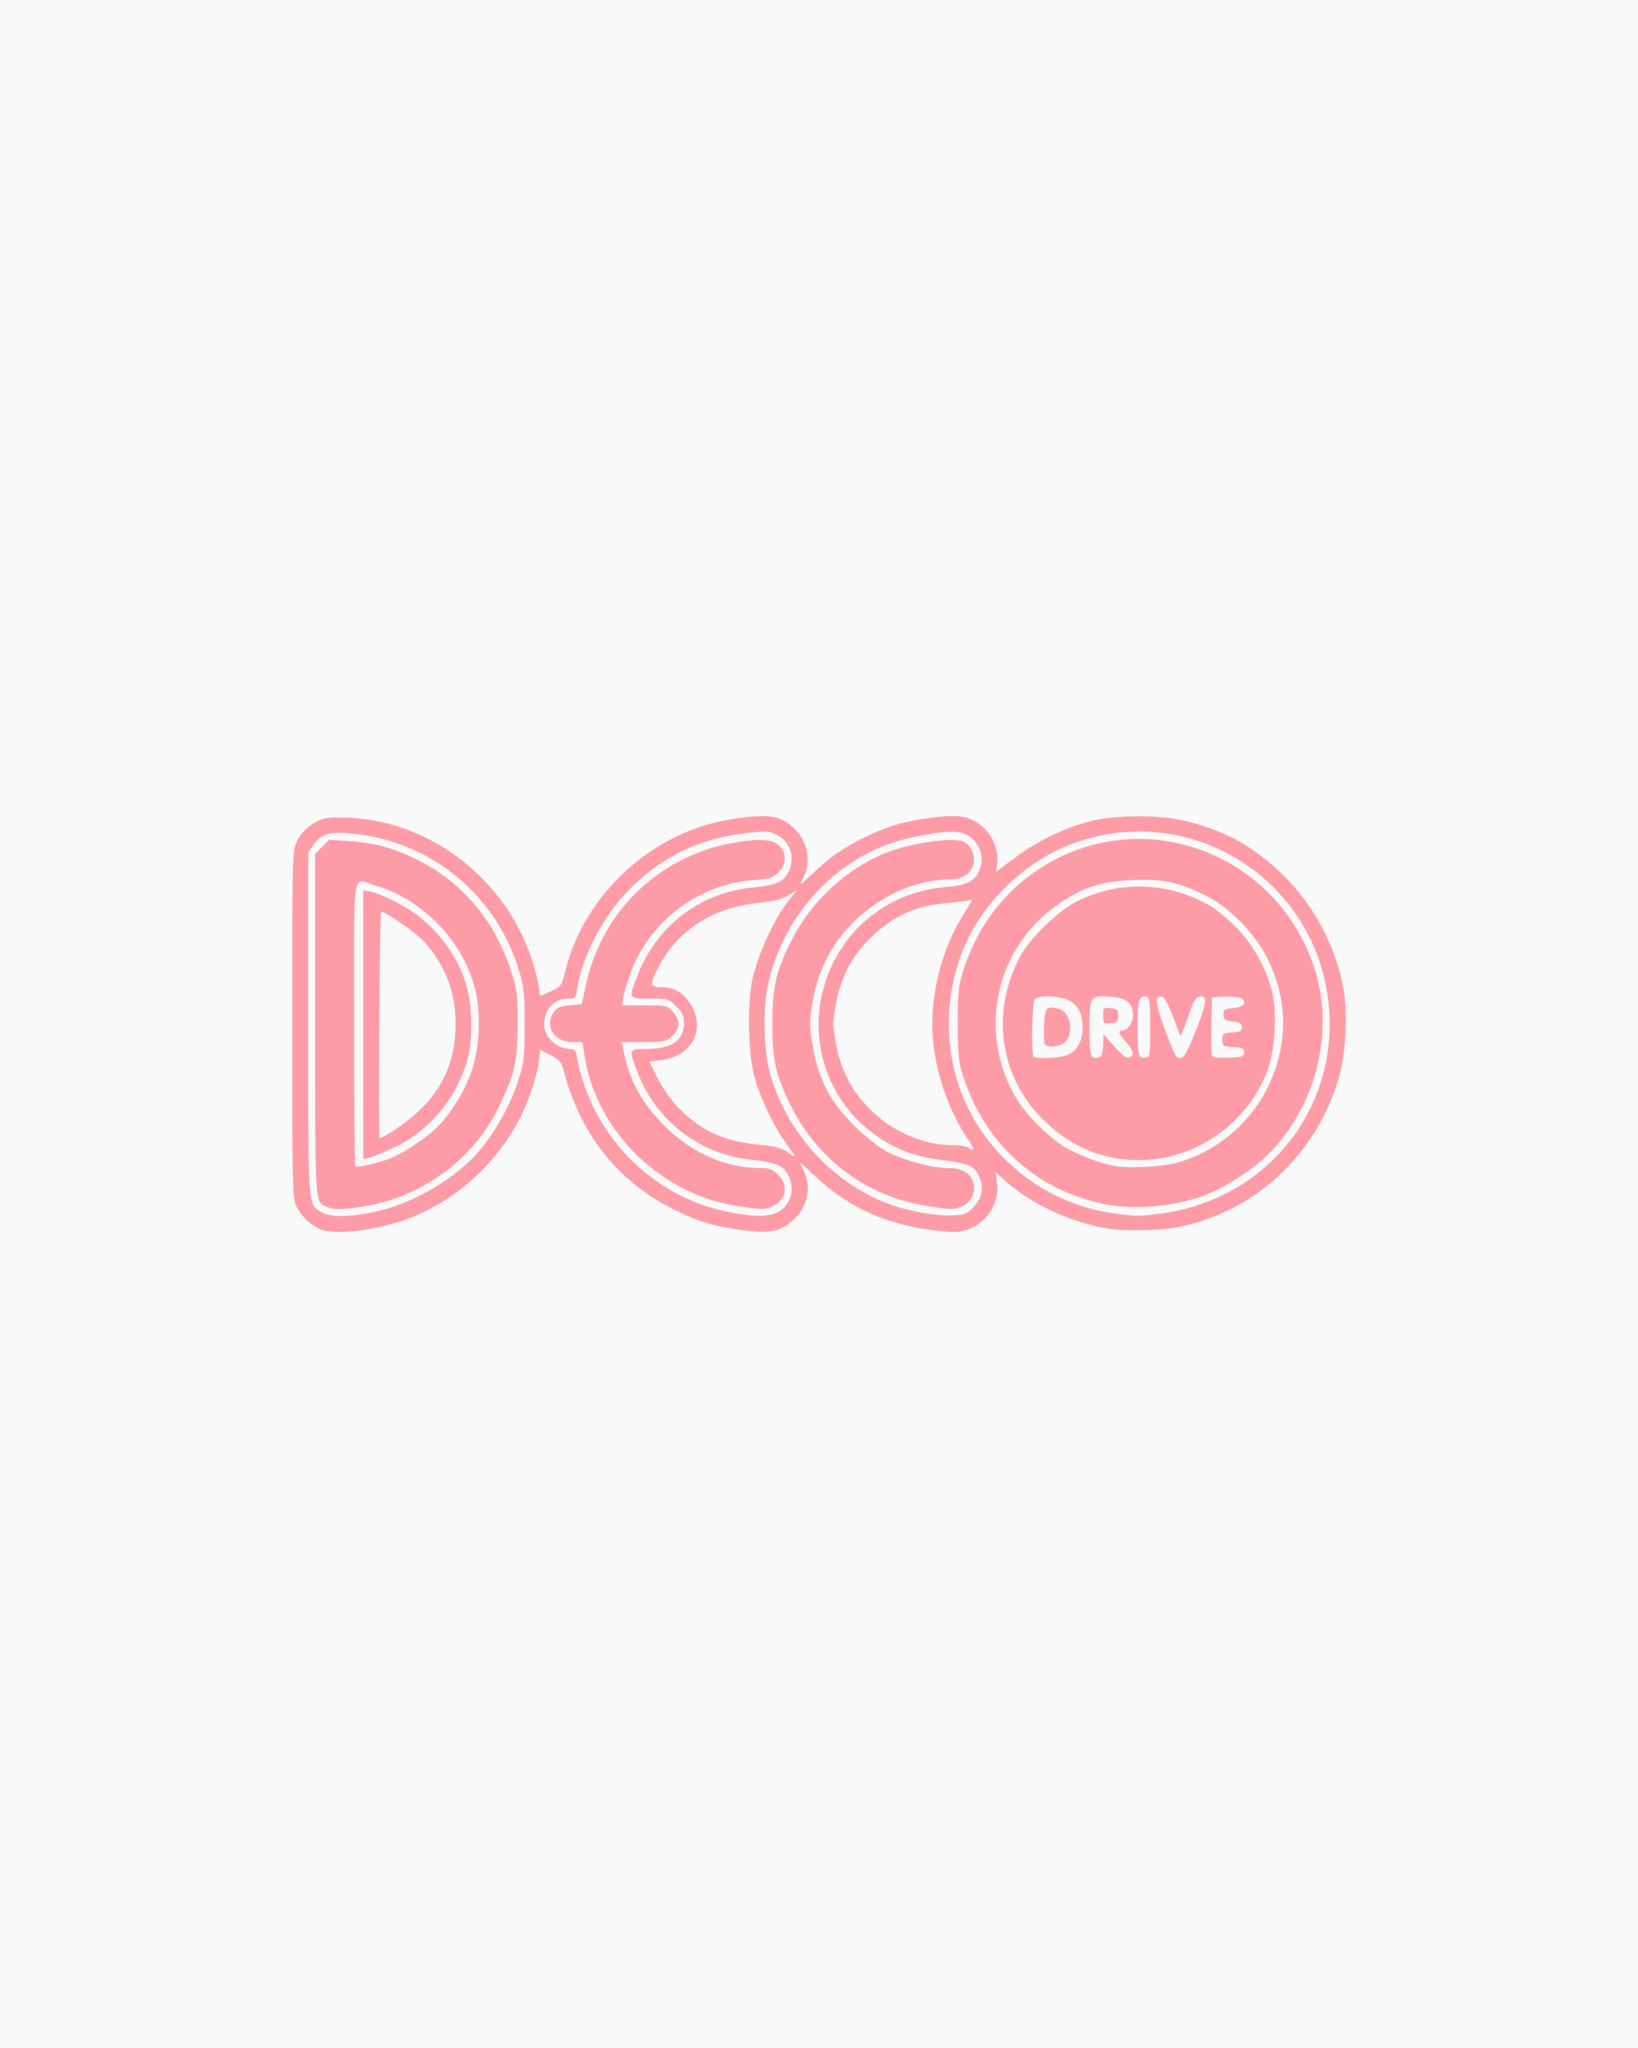 DECO DRIVE